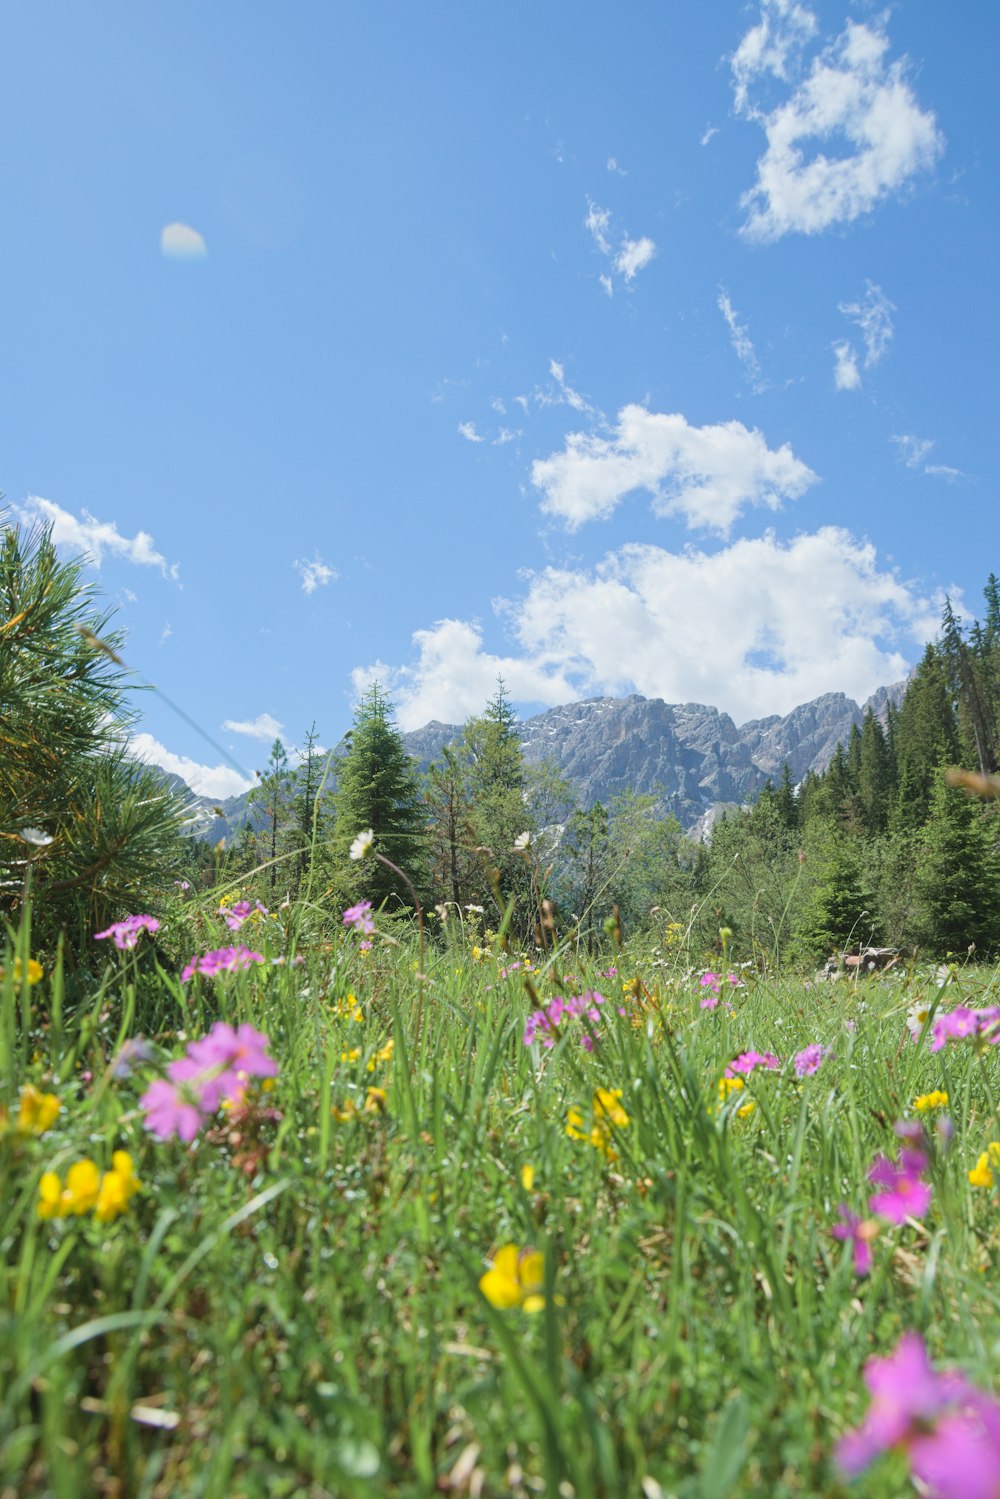 Lila Blumenfeld in der Nähe von grünen Bäumen und Bergen unter blauem Himmel während des Tages